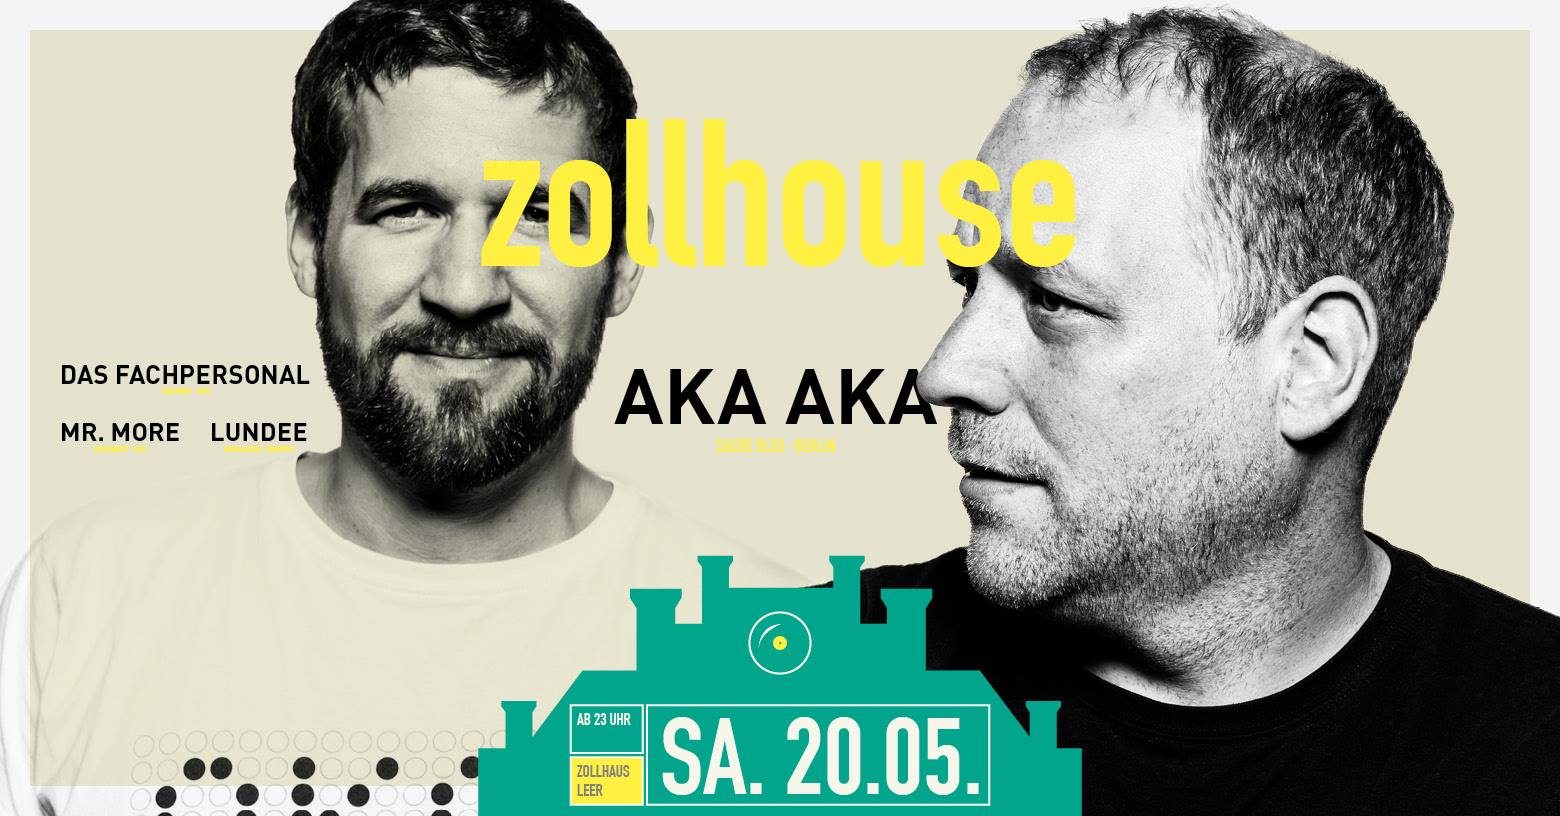 zollhouse-akaaka-20-05-17